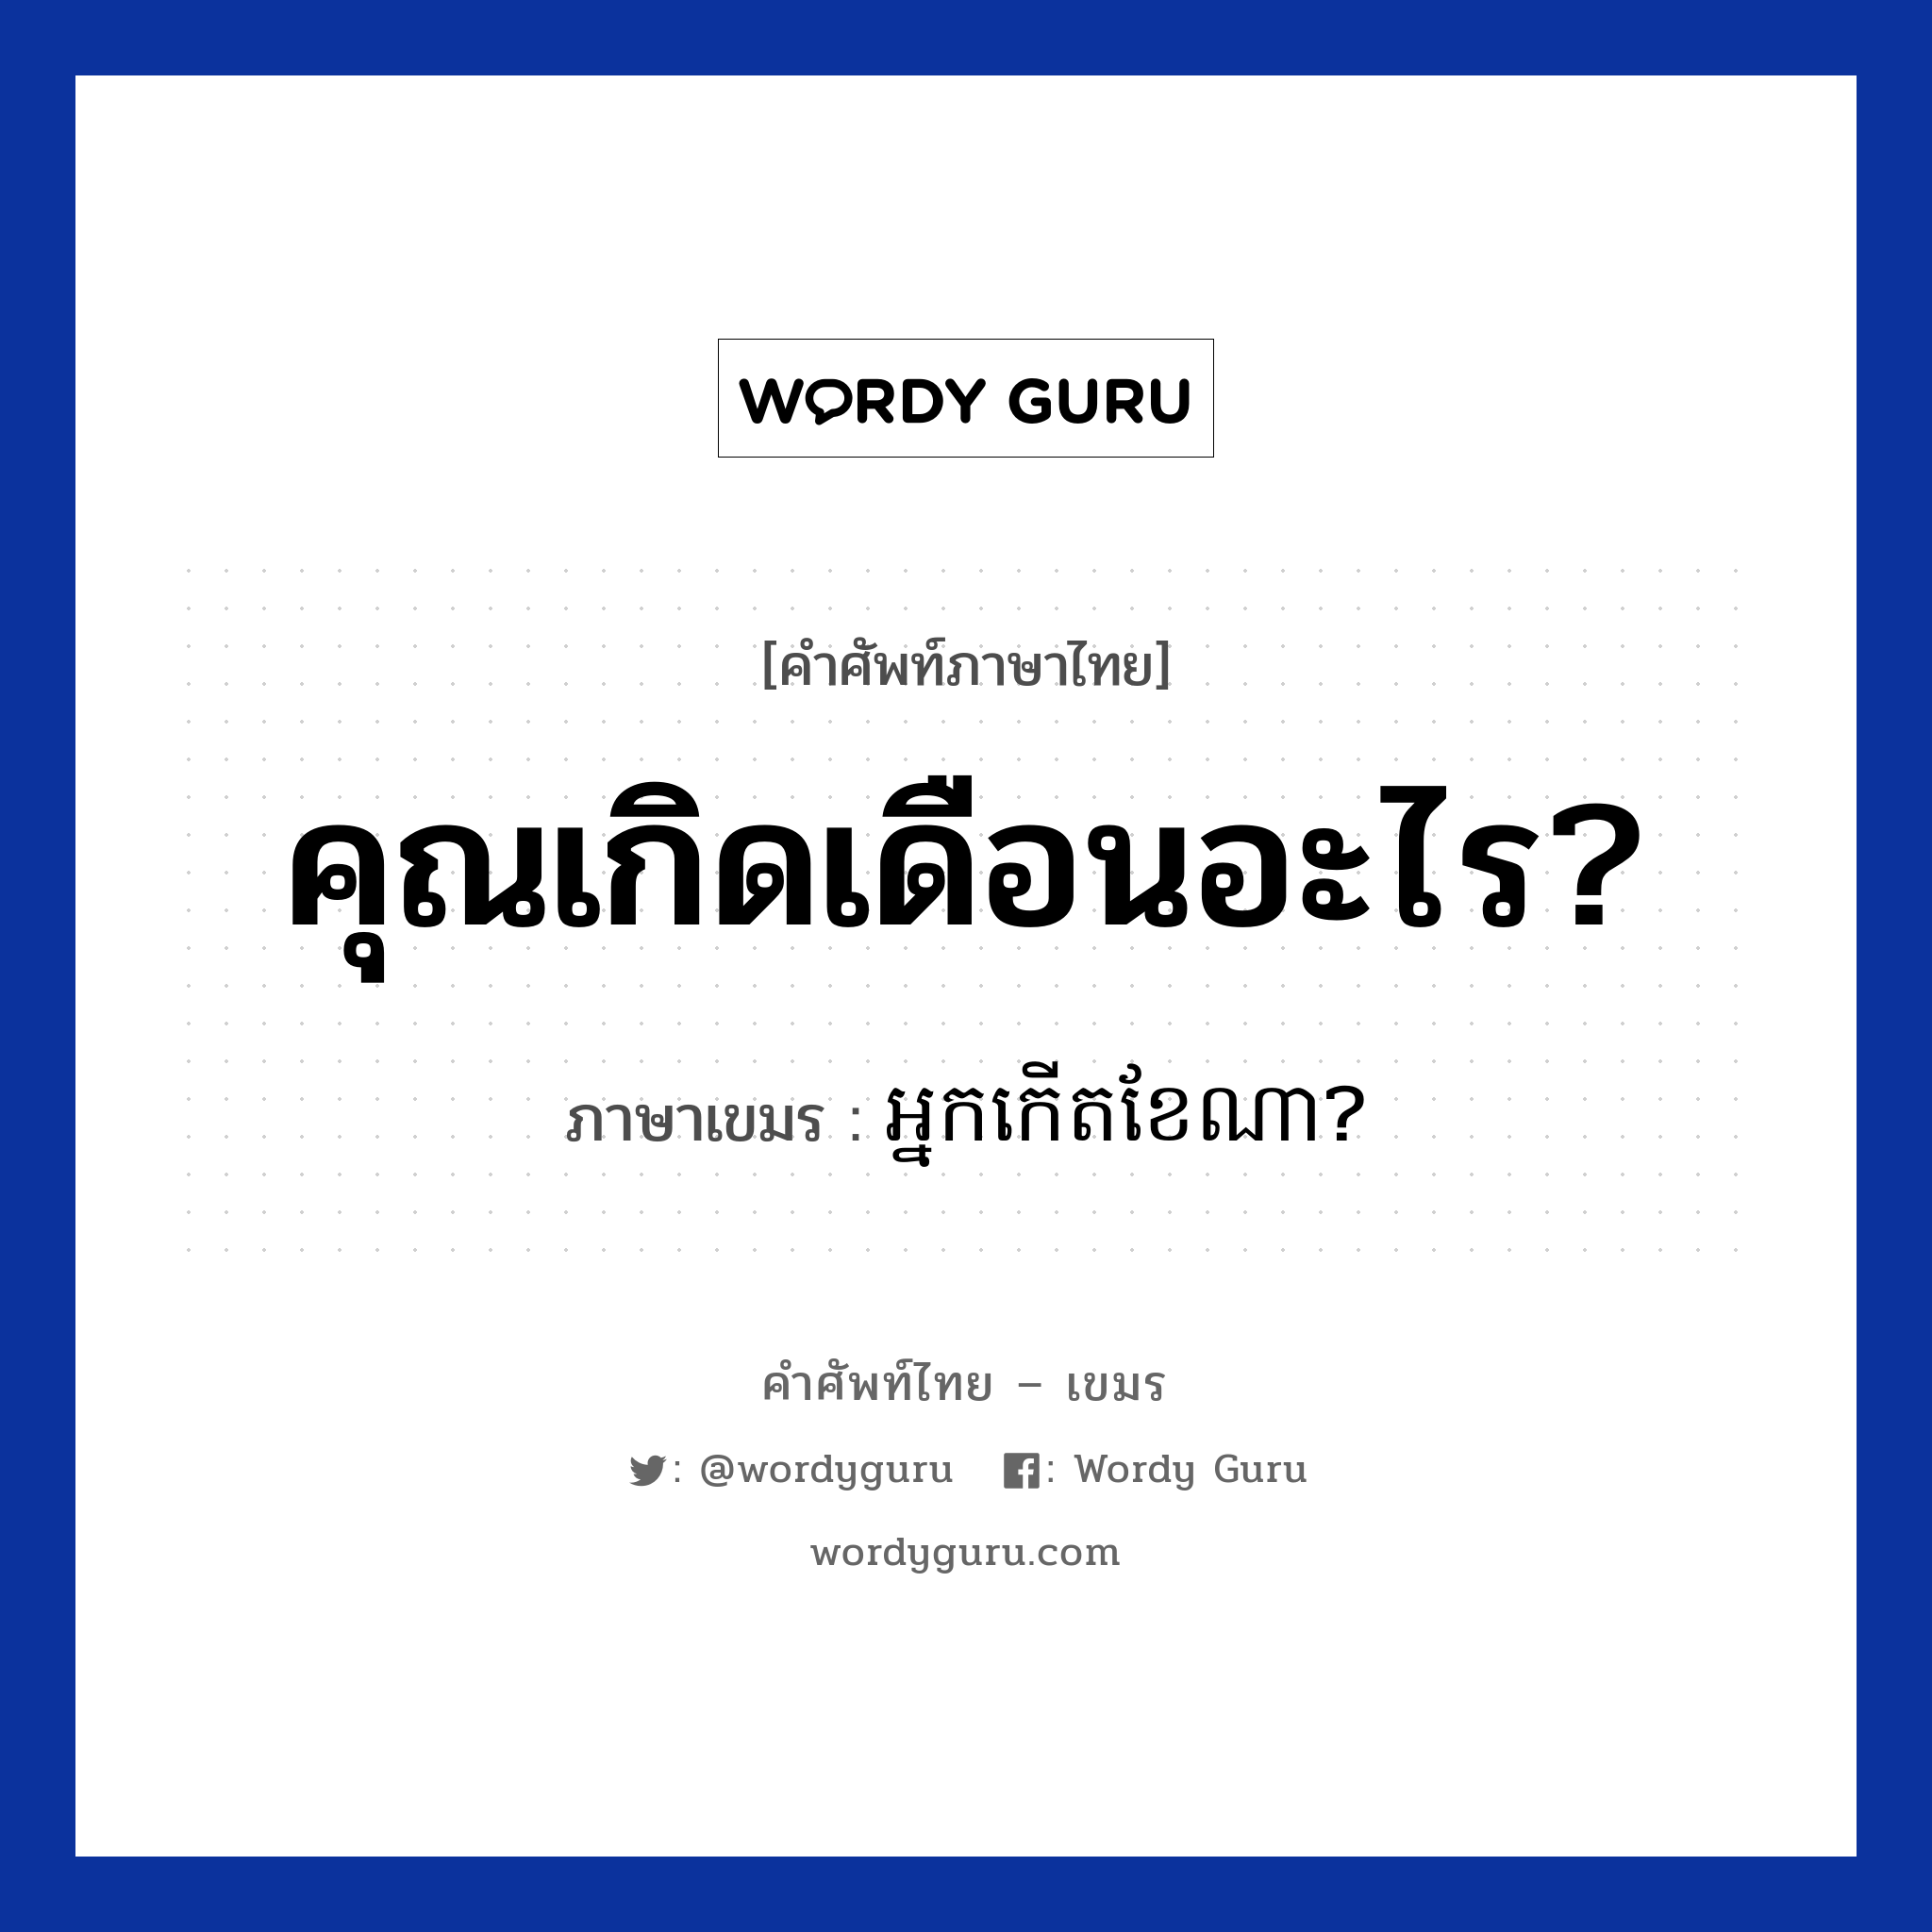 คุณเกิดเดือนอะไร? ภาษาเขมรคืออะไร, คำศัพท์ภาษาไทย - เขมร คุณเกิดเดือนอะไร? ภาษาเขมร អ្នកកេីតខែណា? หมวด บทสนทนาเกี่ยวกับวัน เวลา Neak kert kea na? หมวด บทสนทนาเกี่ยวกับวัน เวลา